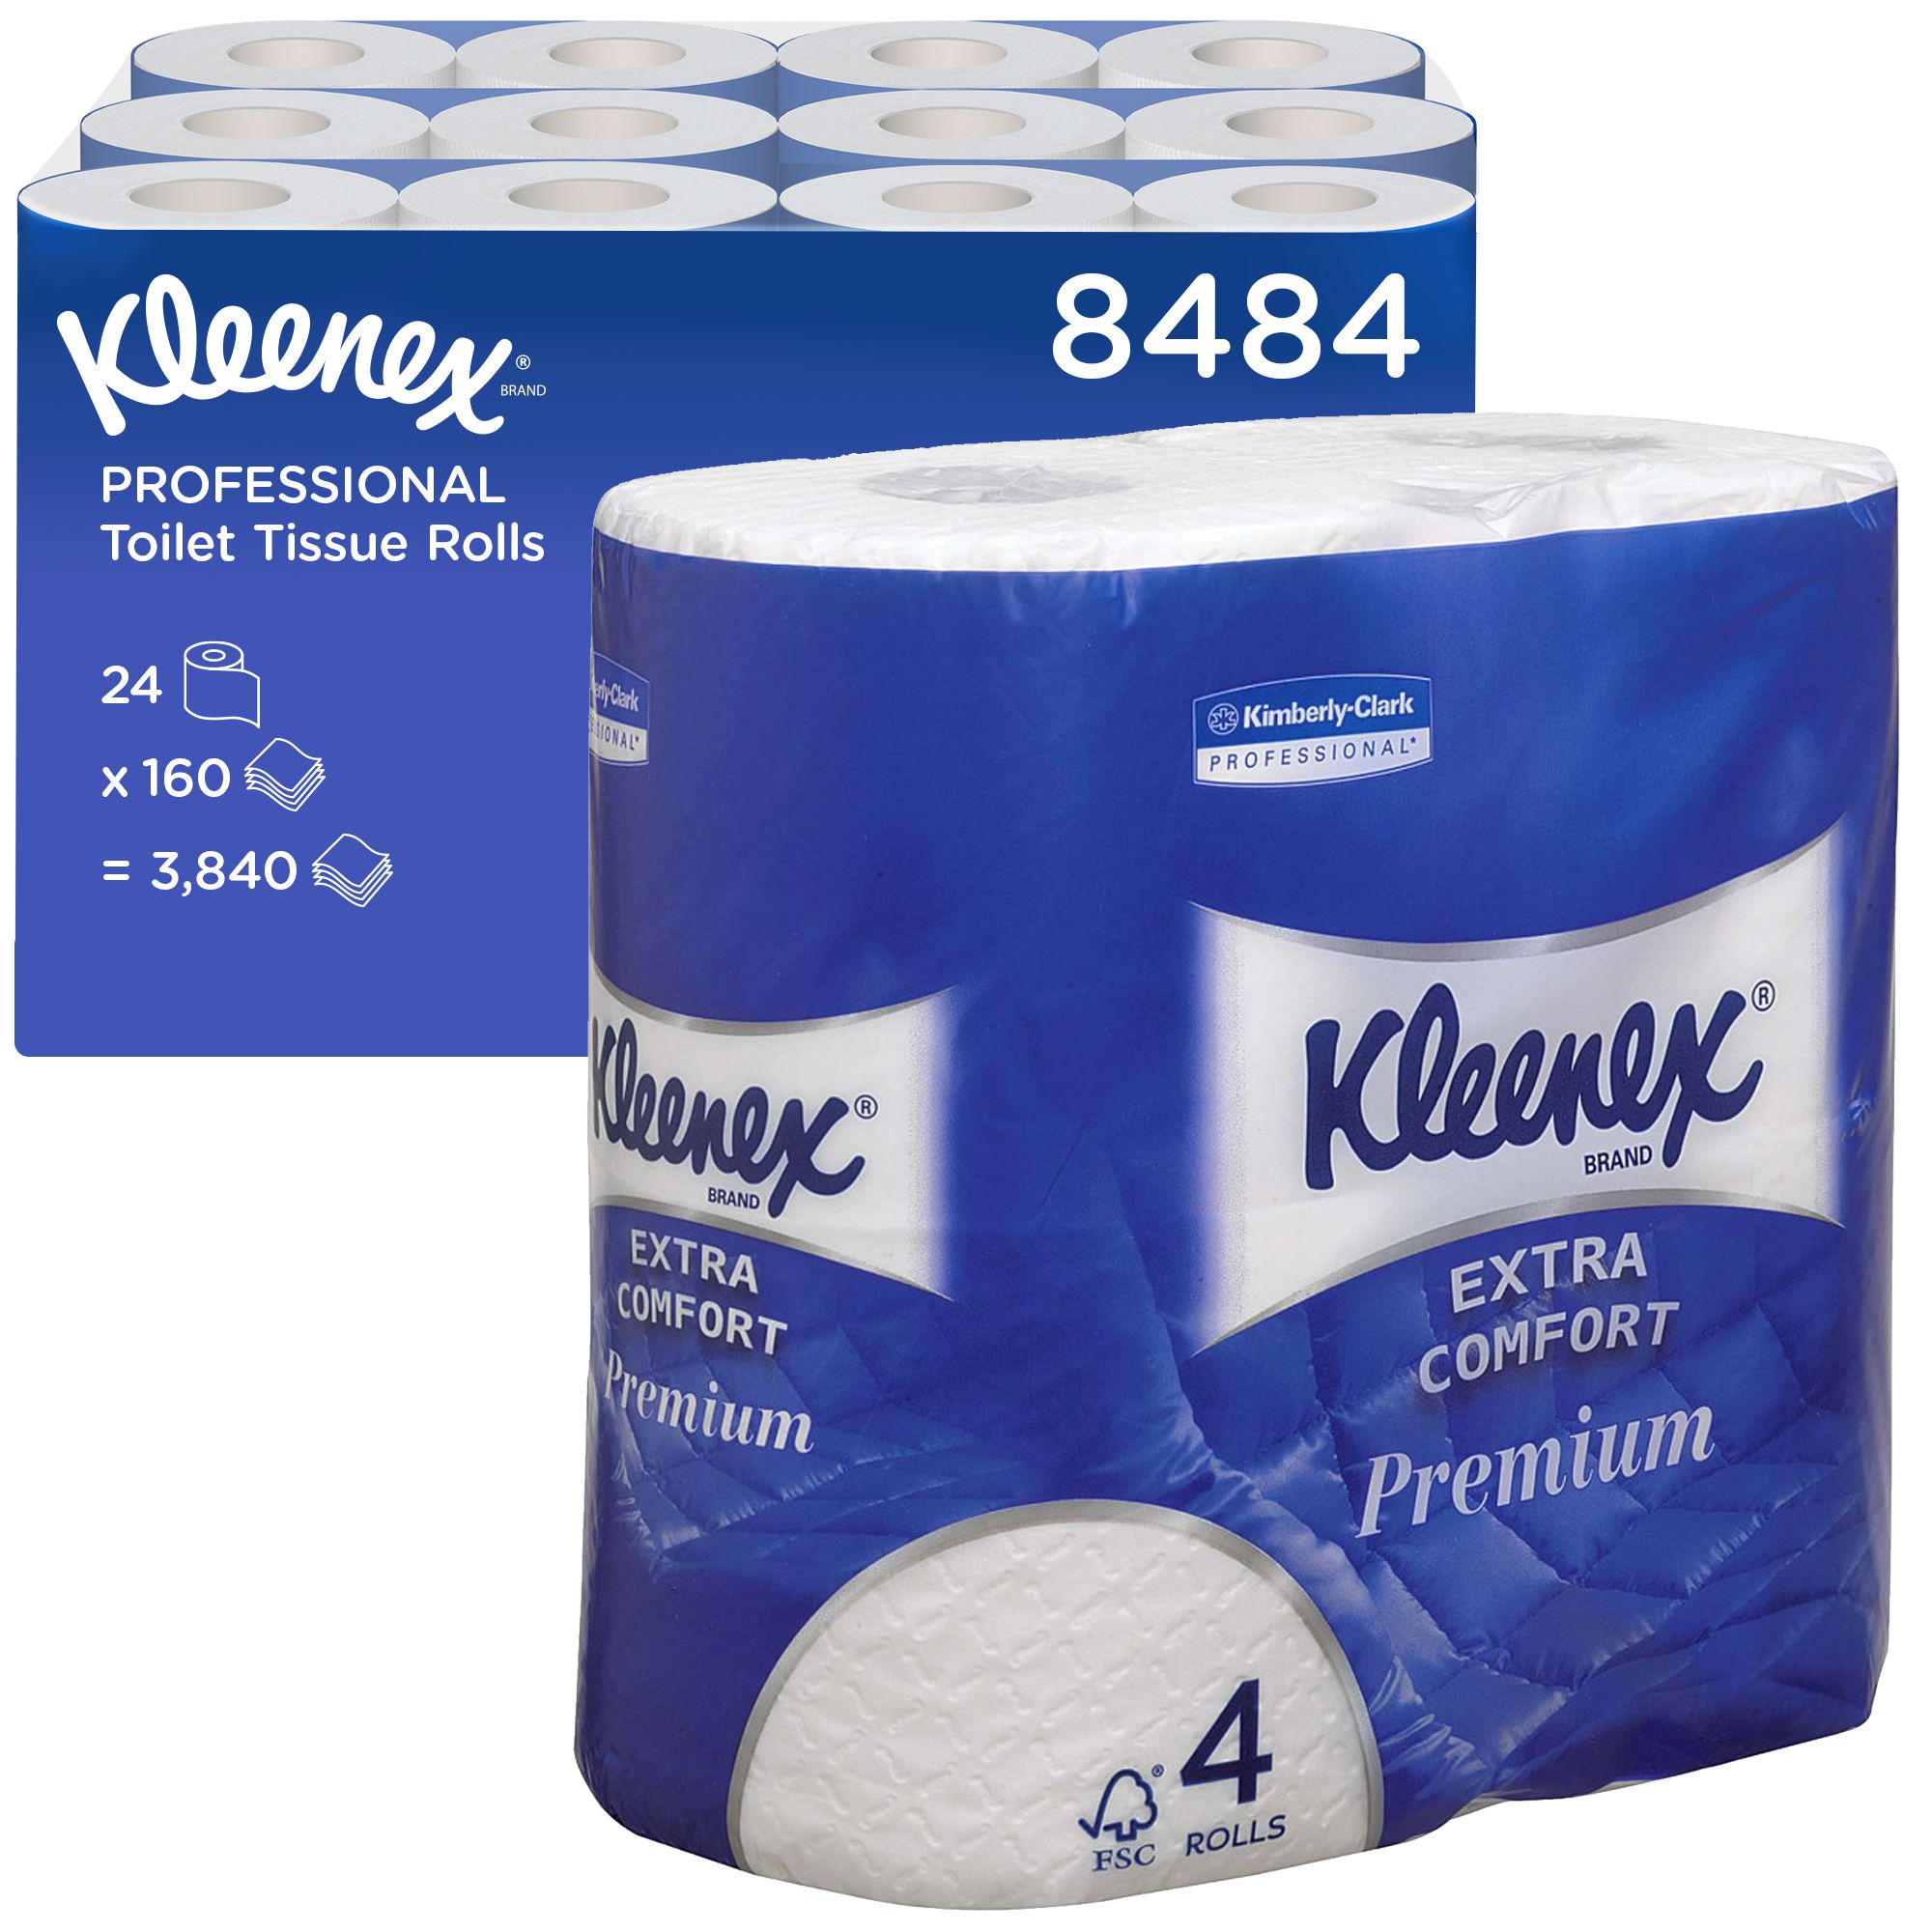 8484 Туалетная бумага в стандартных рулонах Kleenex Premium Extra Comfort премиум-класса - 24 рулона по 19,2 метра